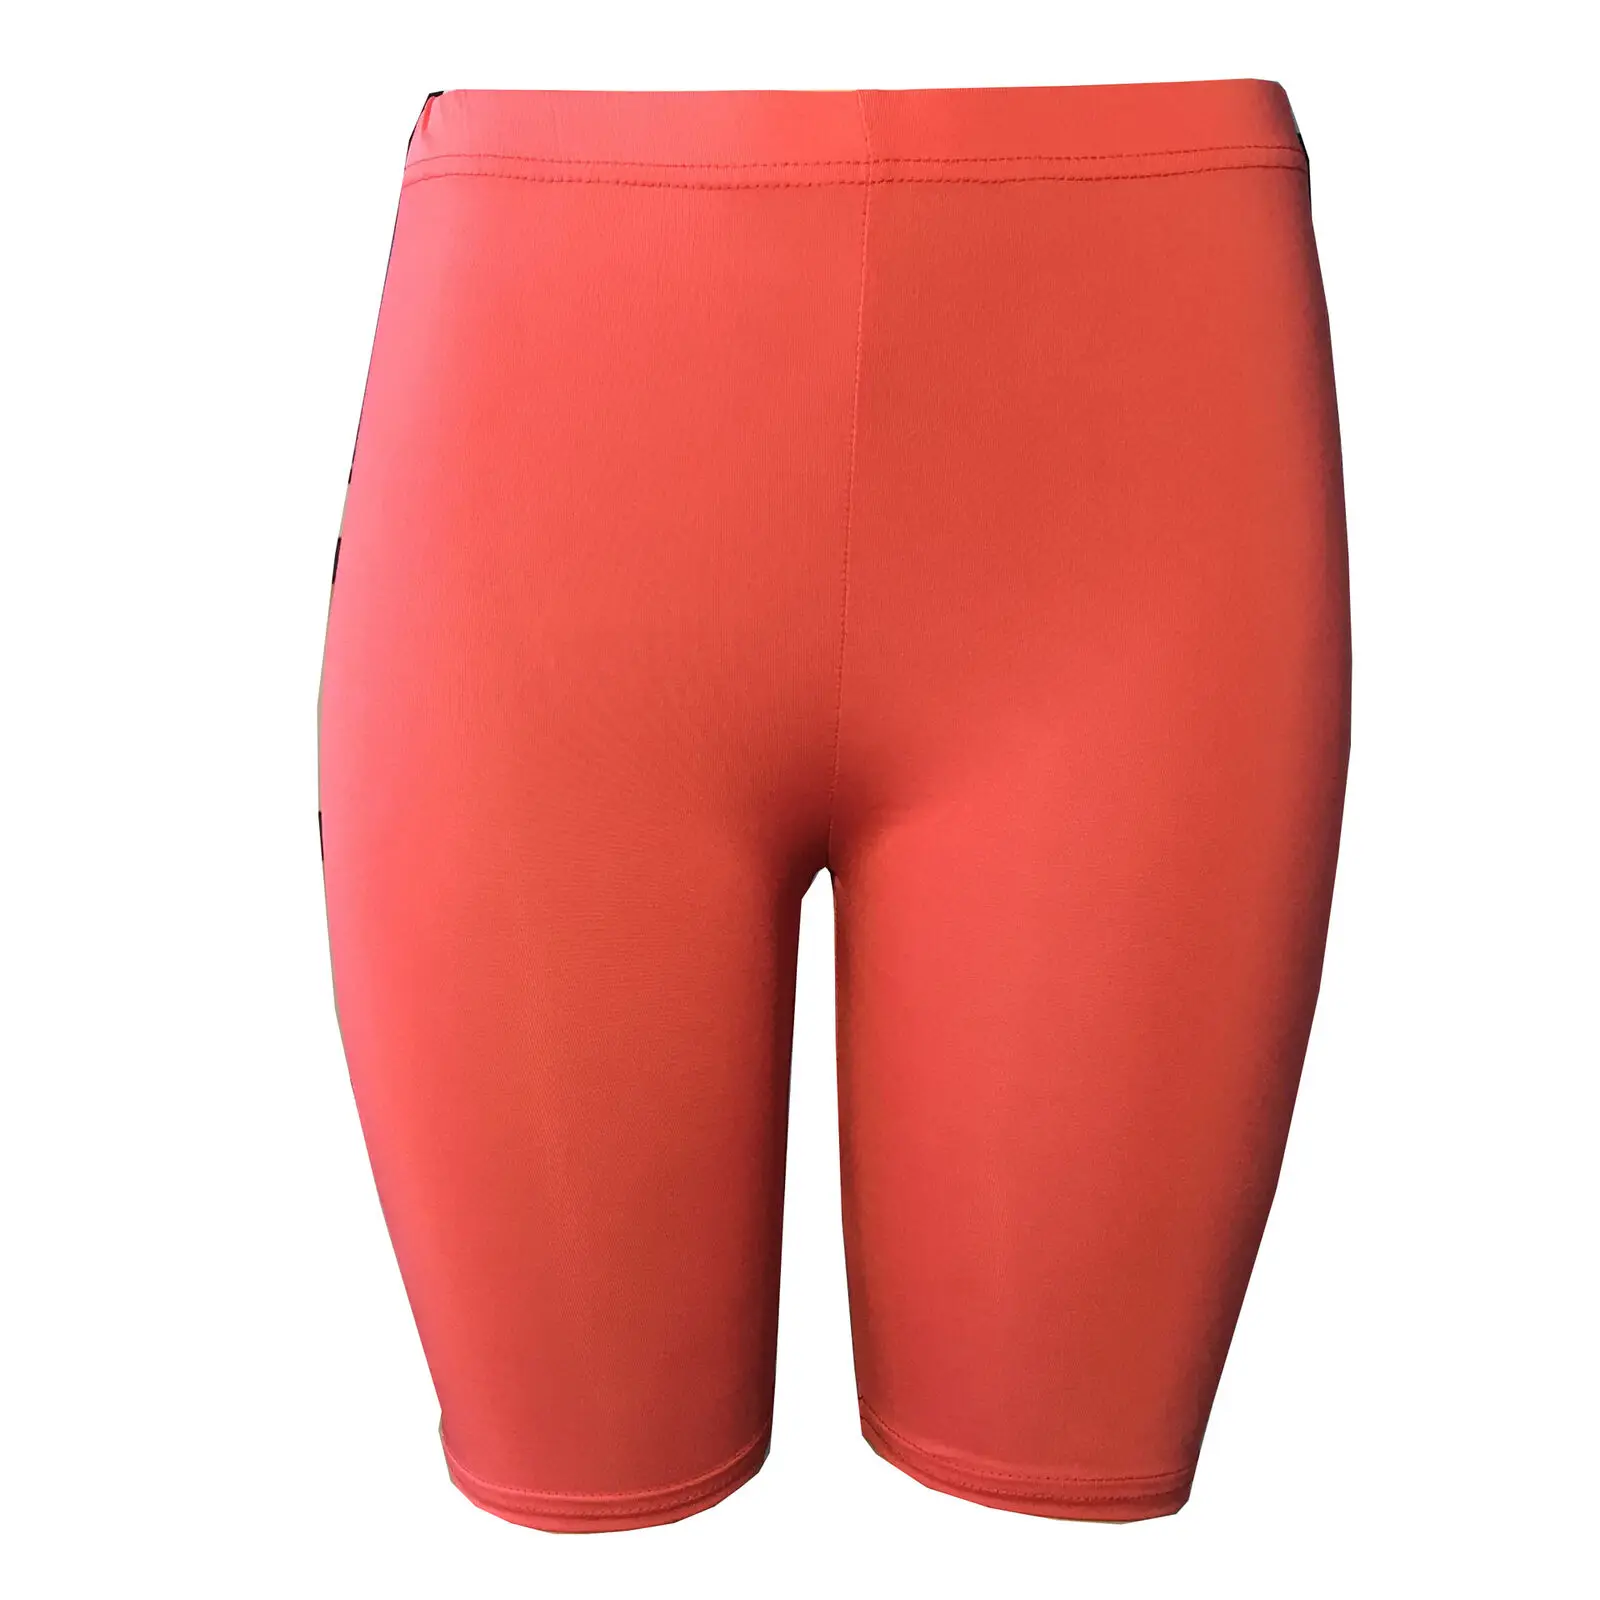 6 цветов, Женские однотонные спортивные шорты, шорты для бега, йоги, спортзала, фитнеса, короткие штаны, для тренировок, пляжа, повседневная спортивная одежда для женщин, для спортзала - Цвет: Красный